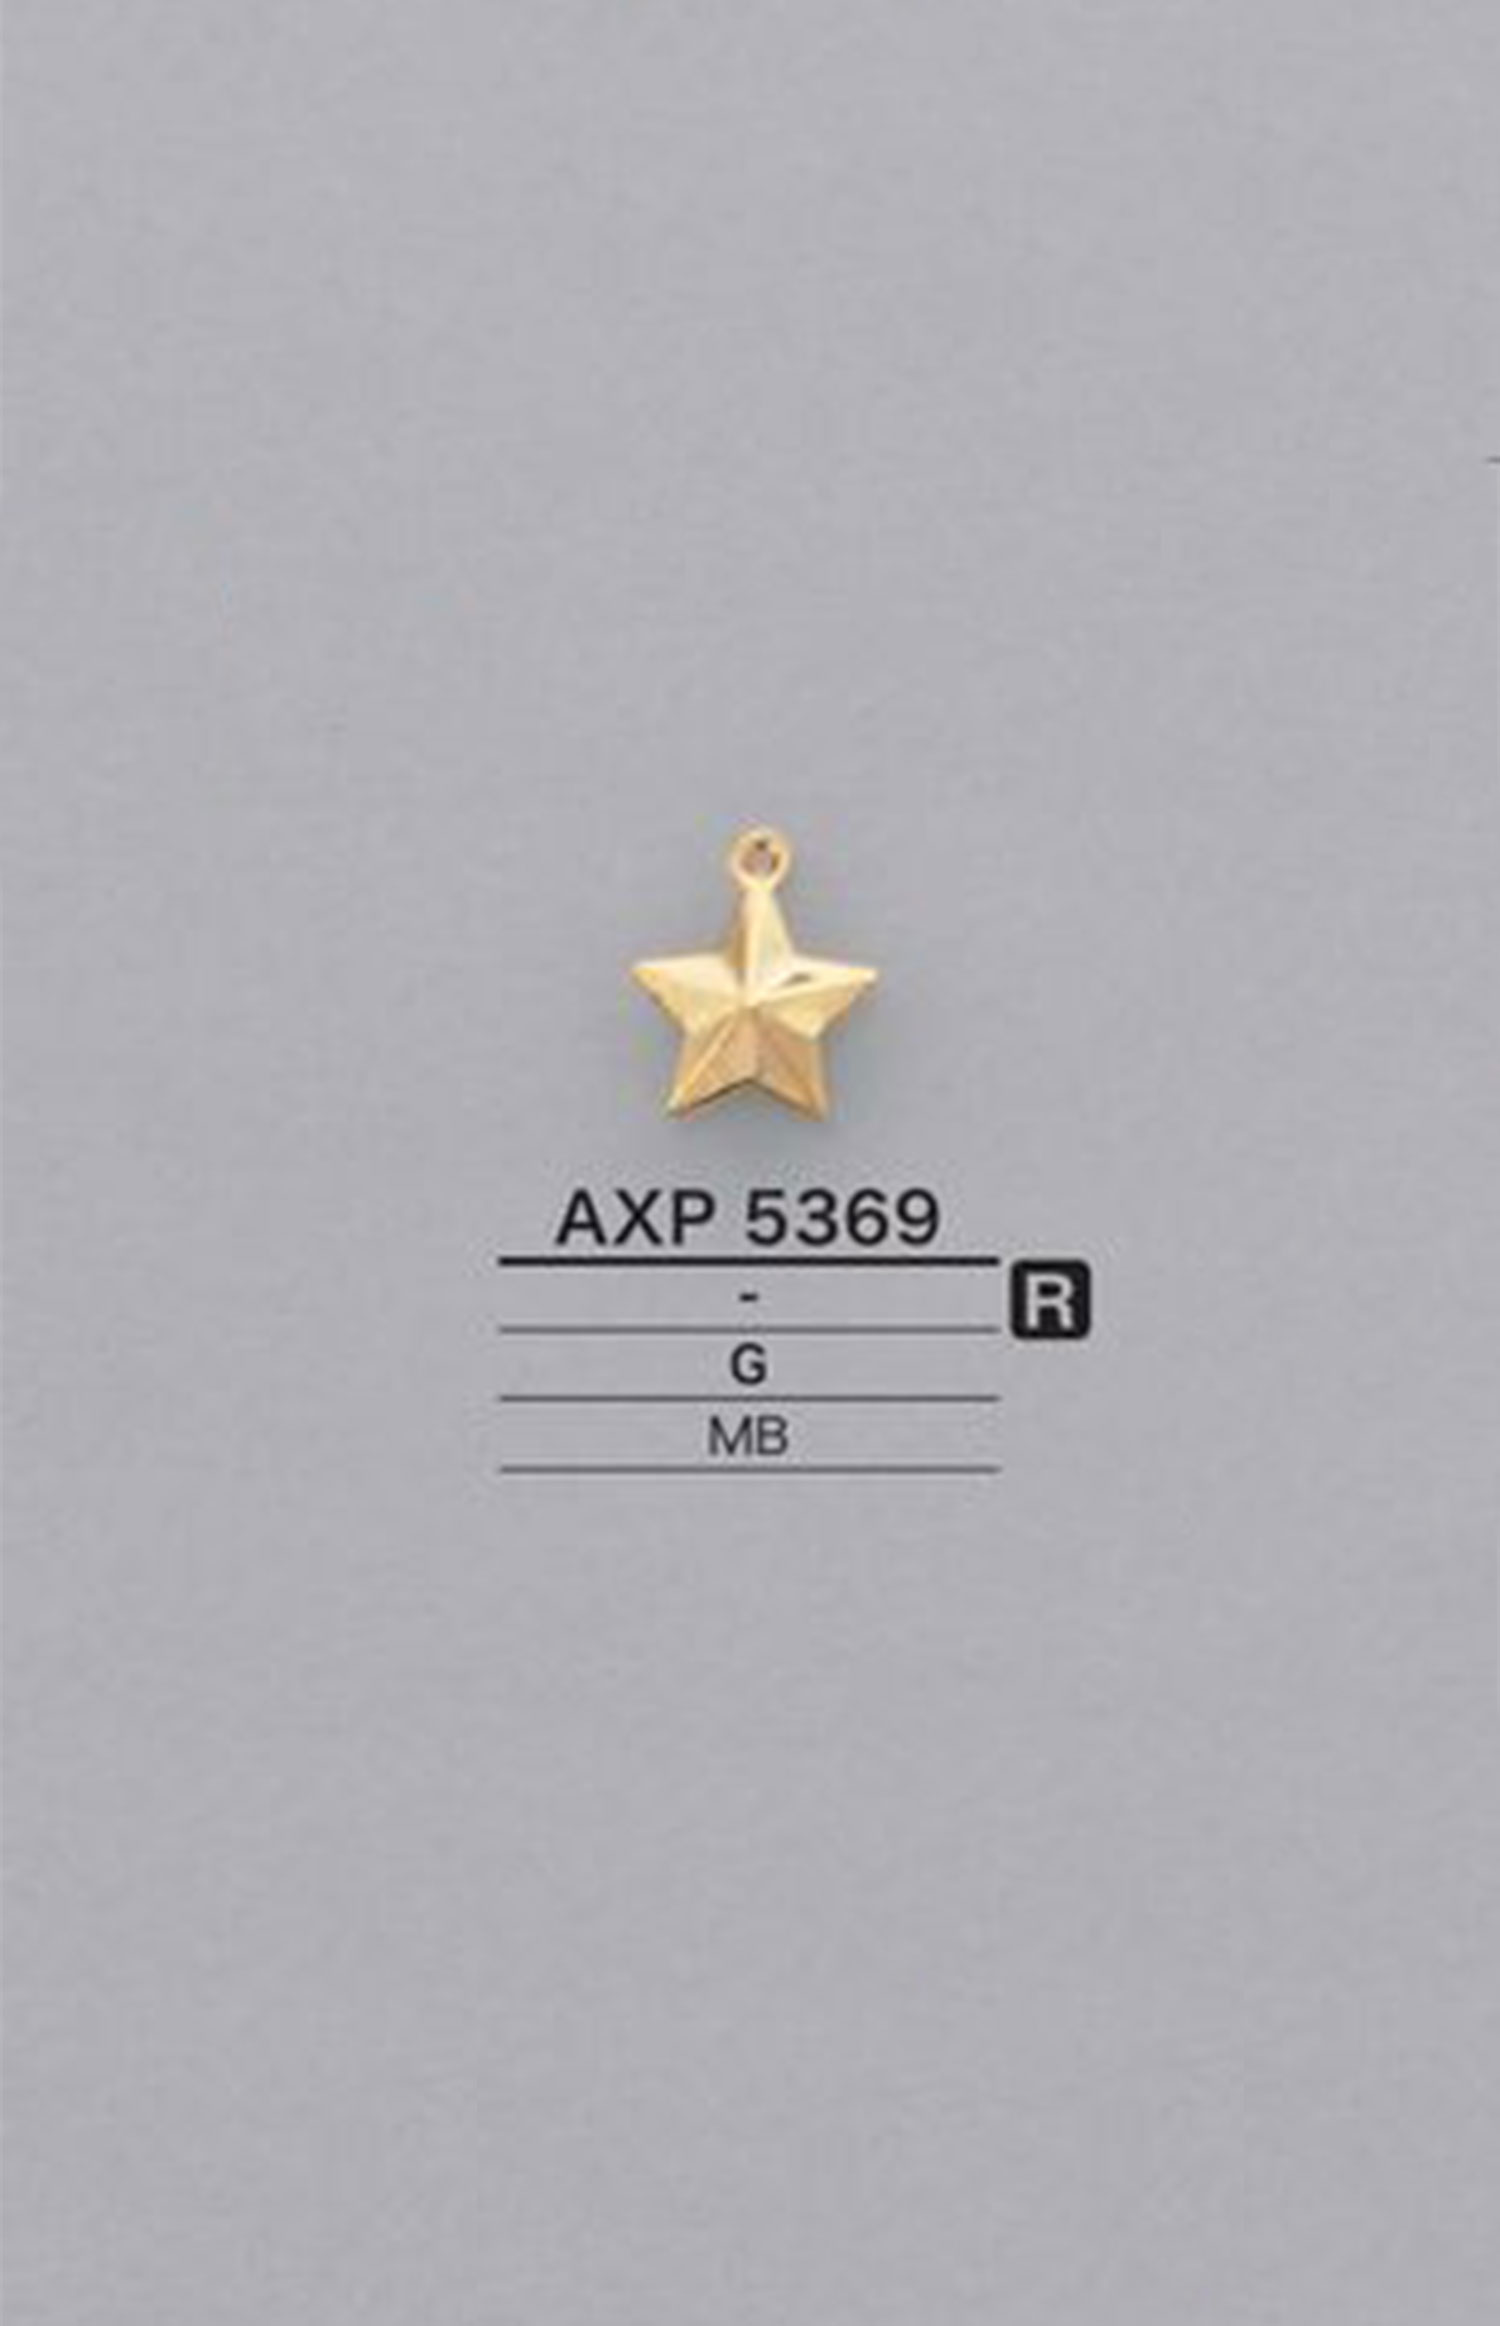 AXP5369 星形图形元素零件[杂货等] 爱丽丝纽扣